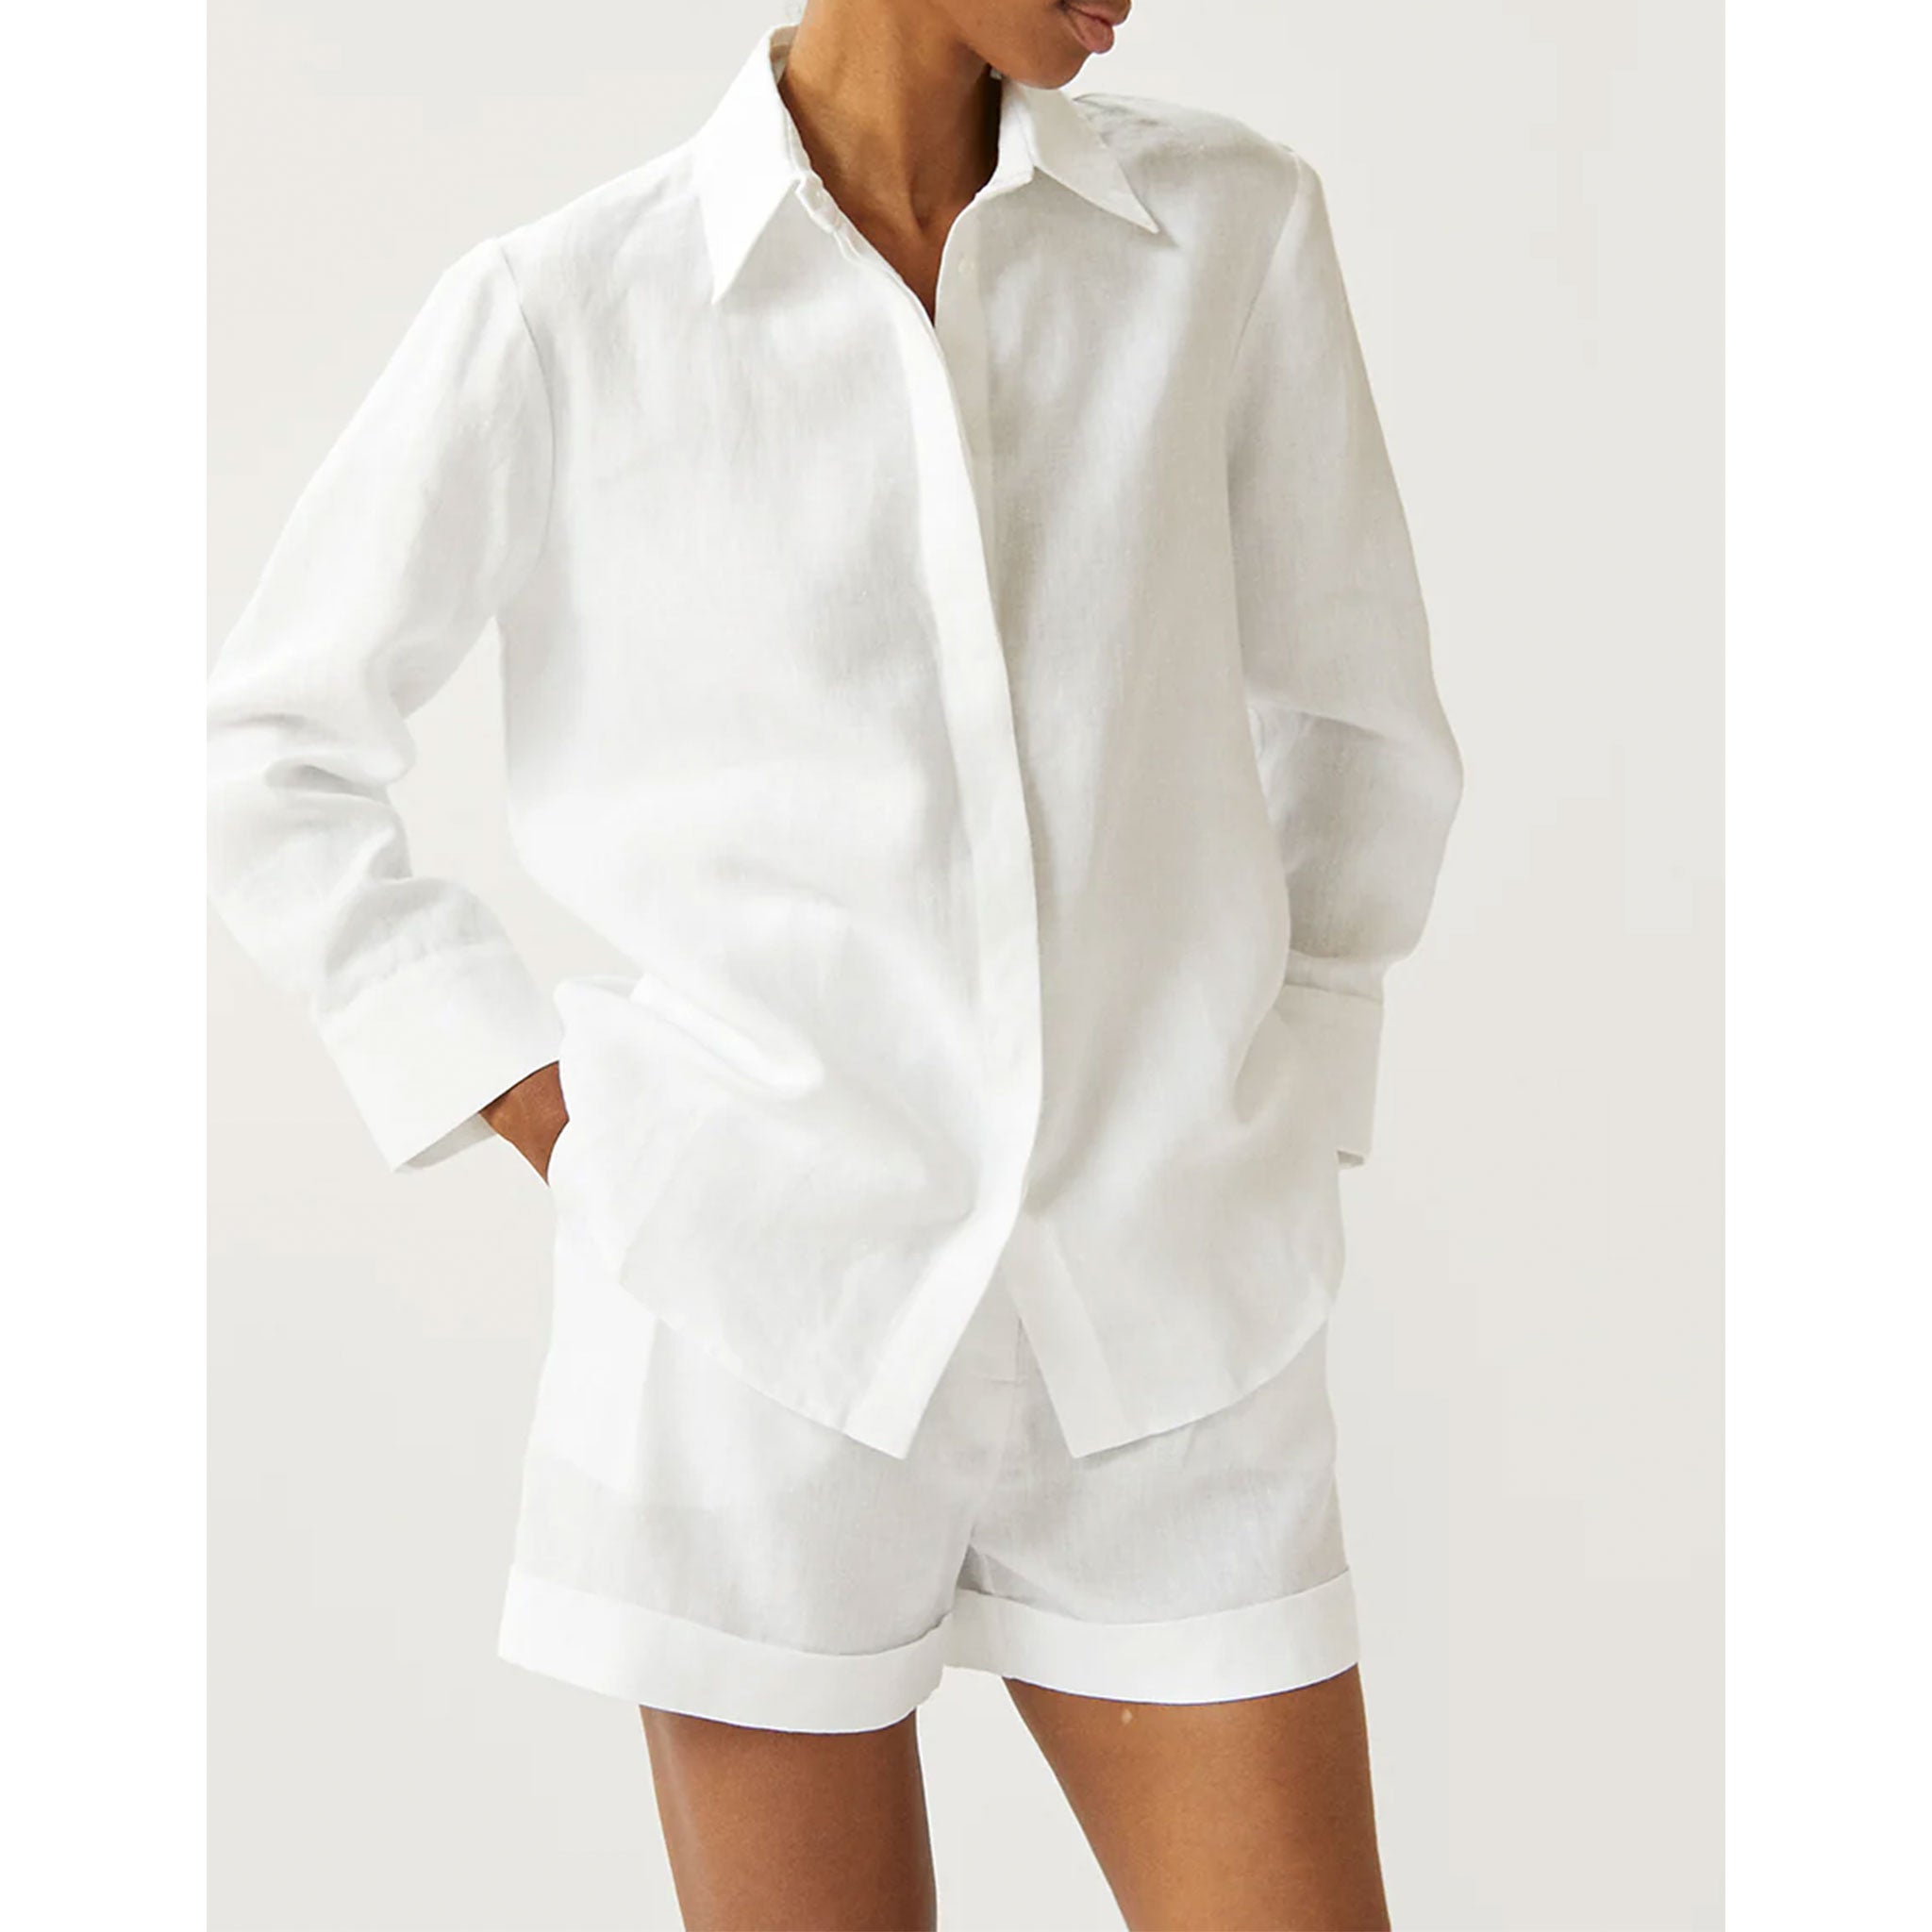 Laia Shirt in Optic White